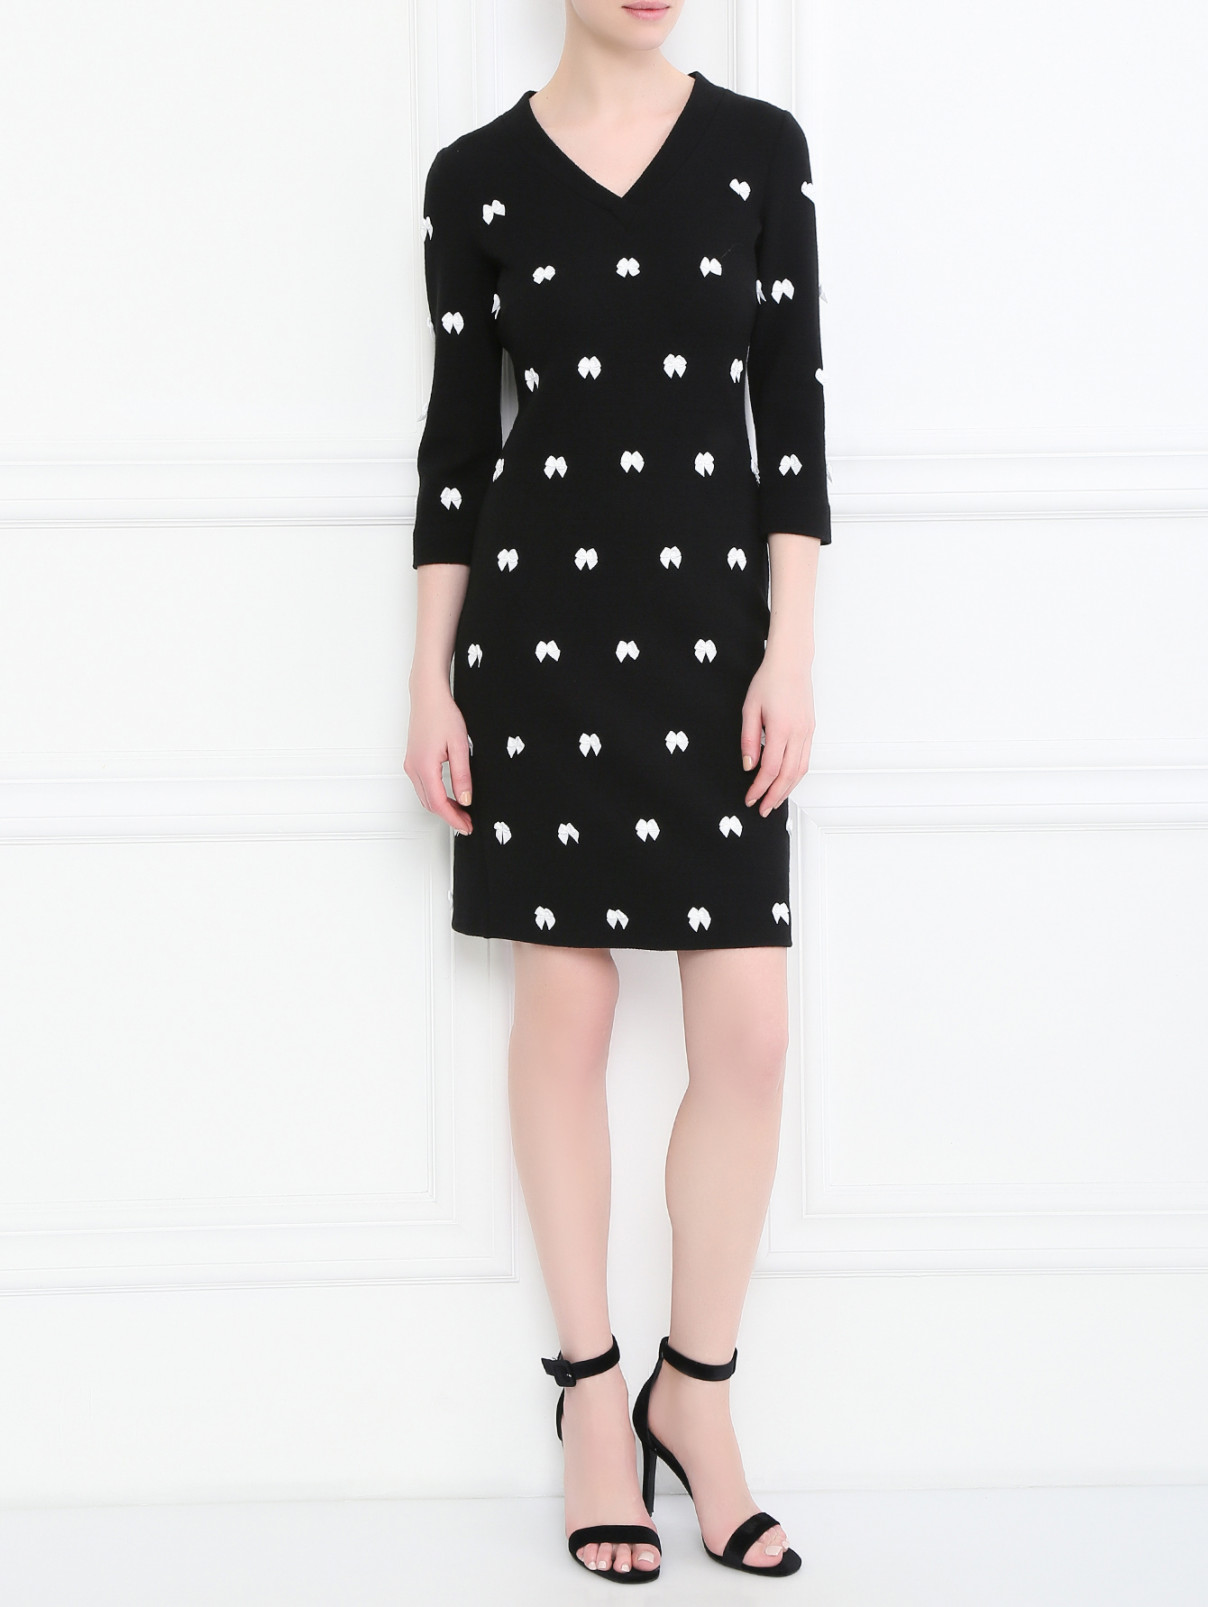 Платье из шерсти с декором Moschino Boutique  –  Модель Общий вид  – Цвет:  Черный